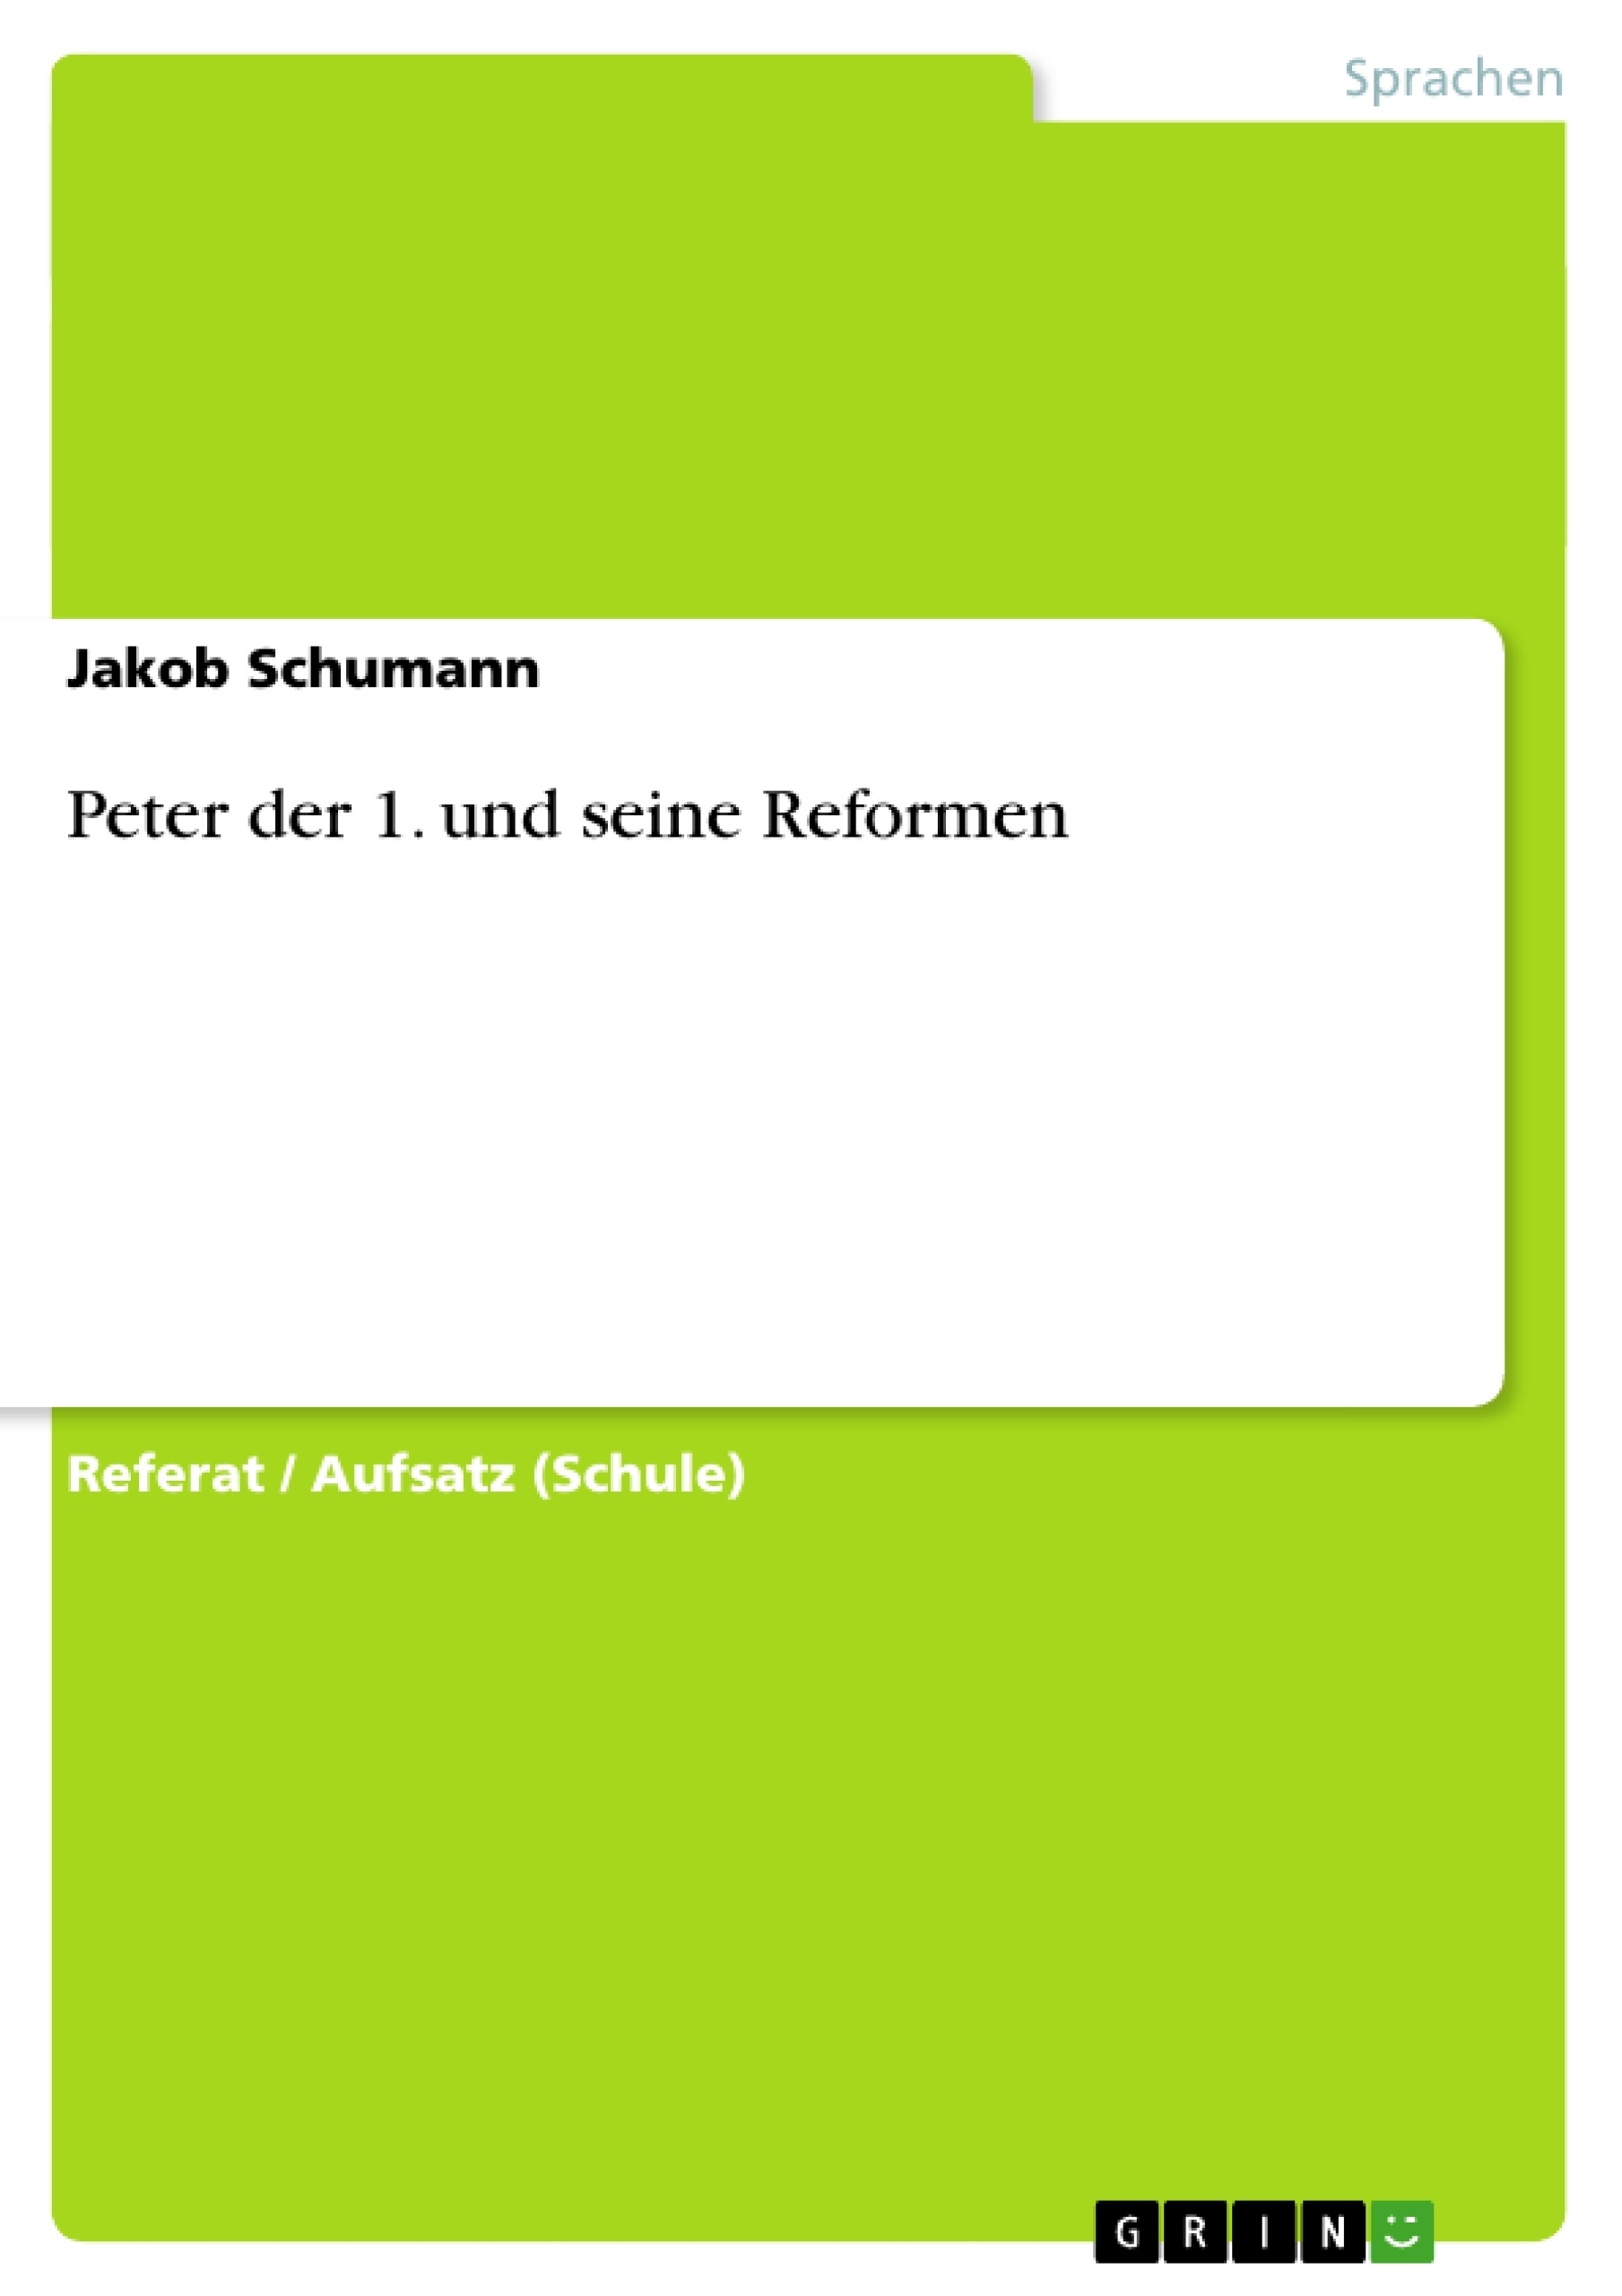 Título: Peter der 1. und seine Reformen